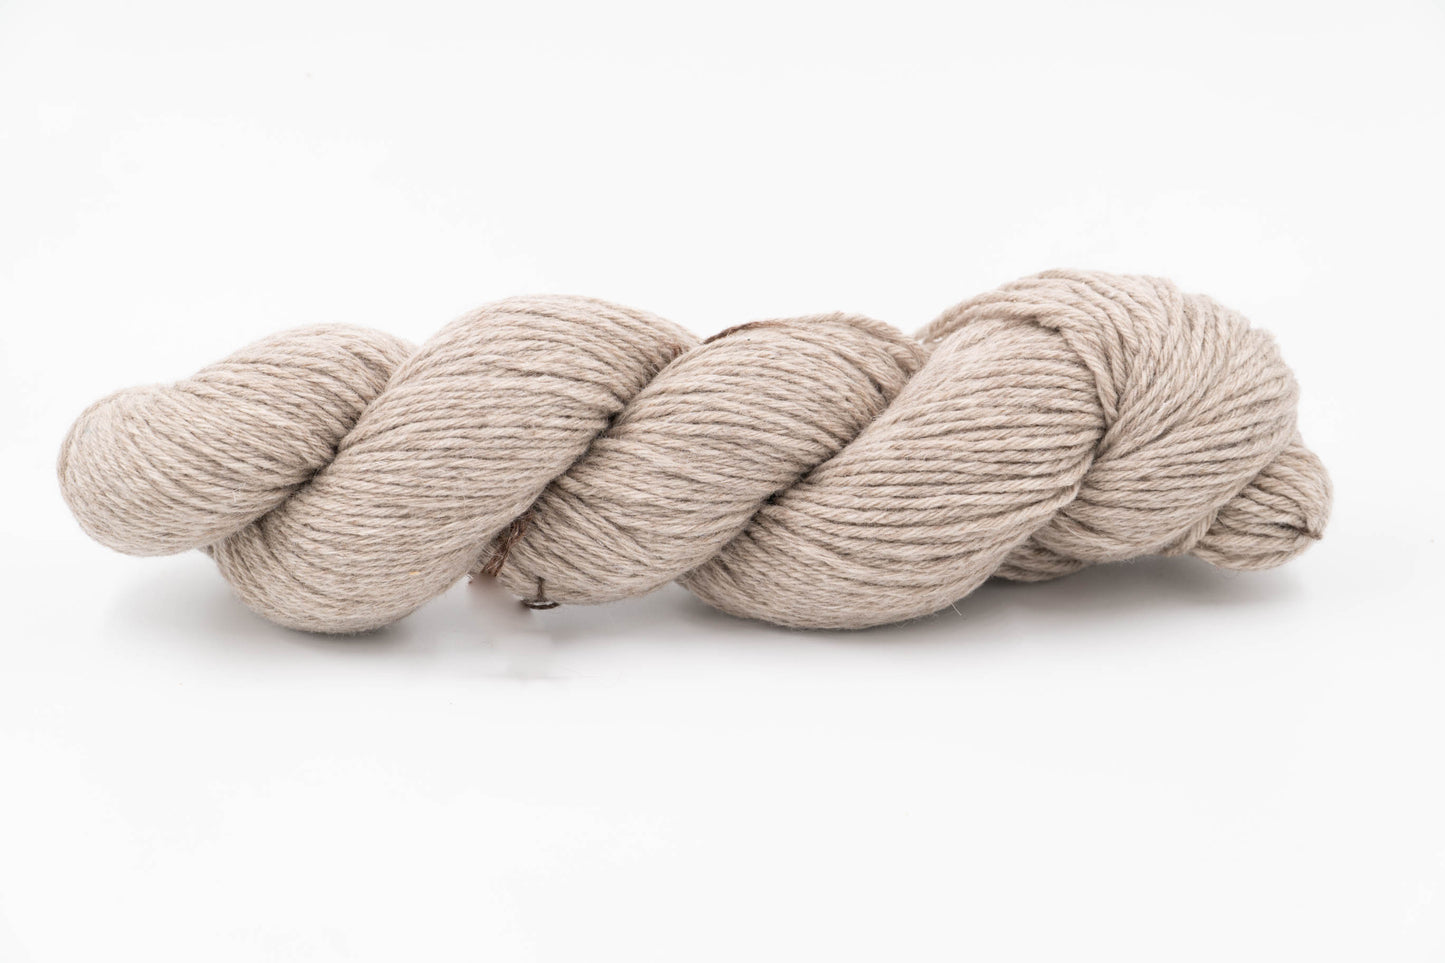 Sheep/Yak Wool Blend Yarn - Natural Melange - Fingering